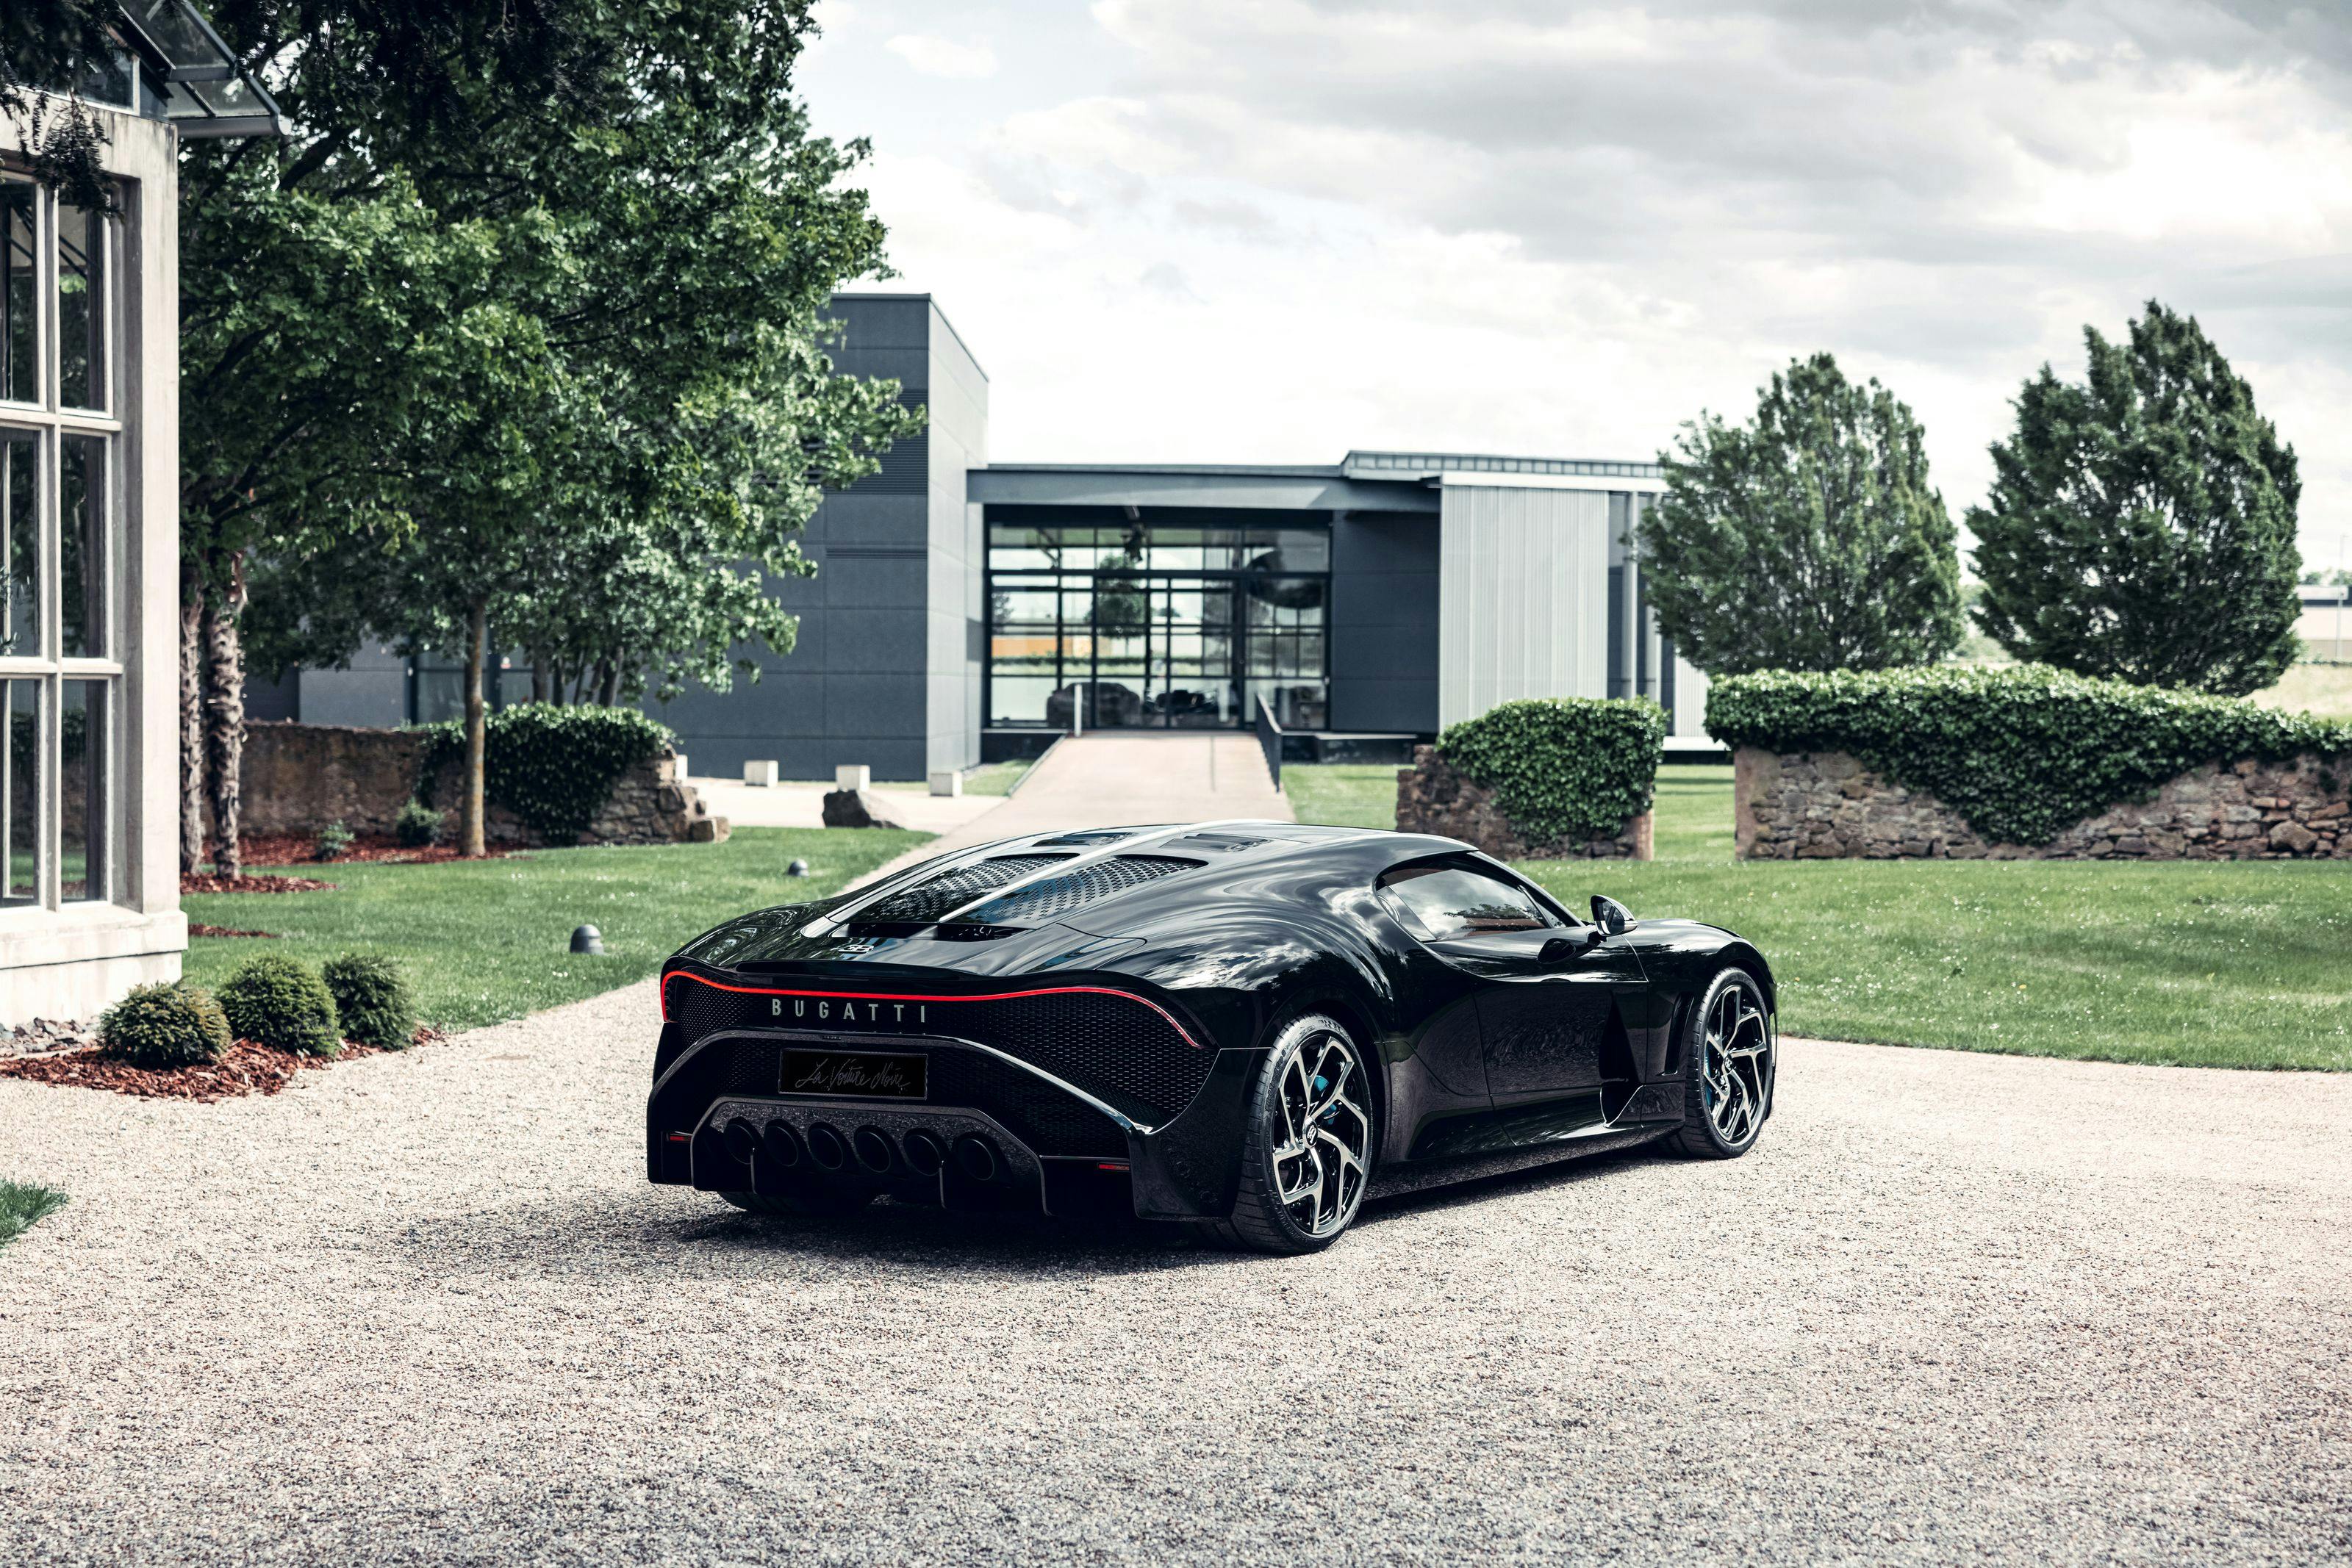 Bugatti La Voiture Noire – Von einer Vision zur Realität